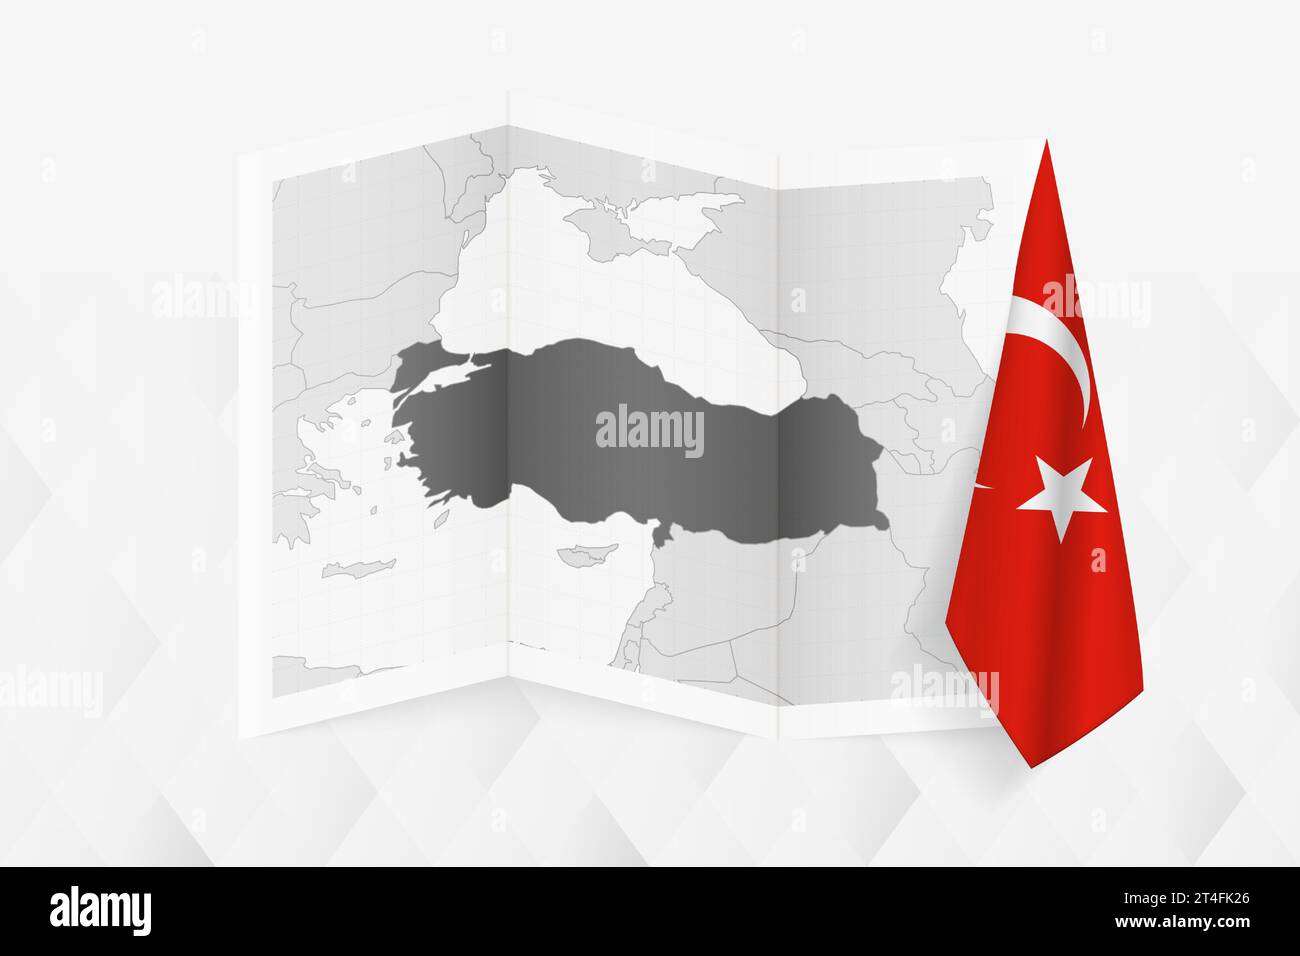 Une carte en niveaux de gris de la Turquie avec un drapeau turc suspendu sur un côté. Carte vectorielle pour de nombreux types de nouvelles. Illustration vectorielle. Illustration de Vecteur